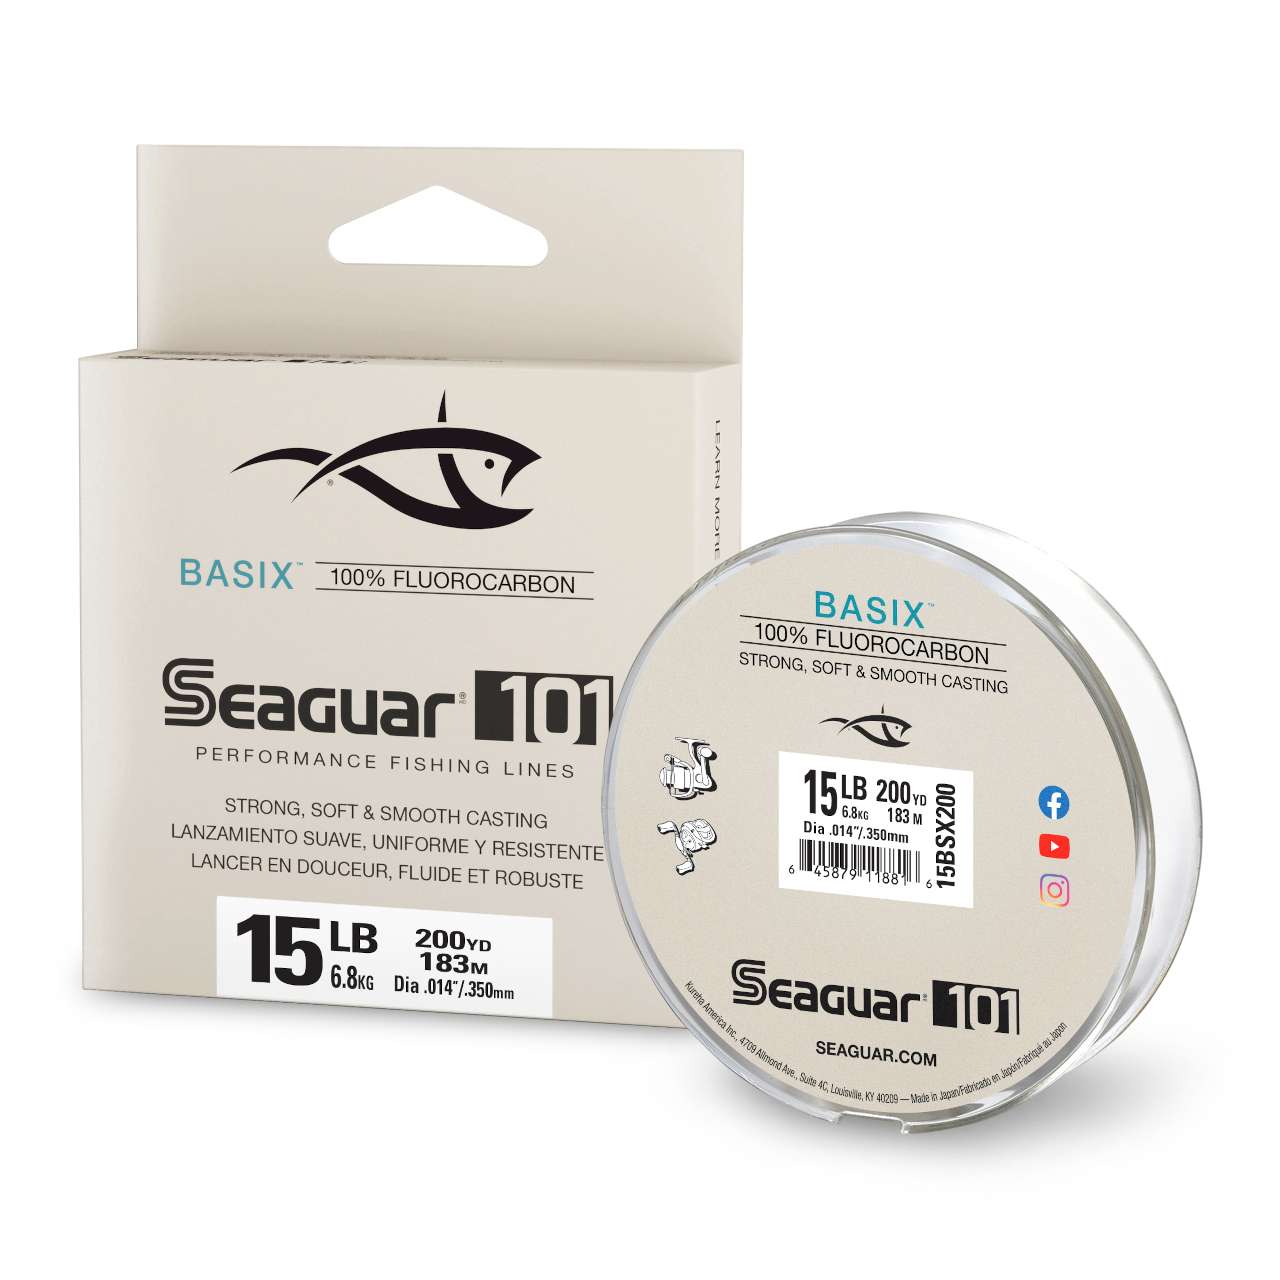 Seaguar Basix Fluorocarbon Line 200yd - Dick Smith's Live Bait